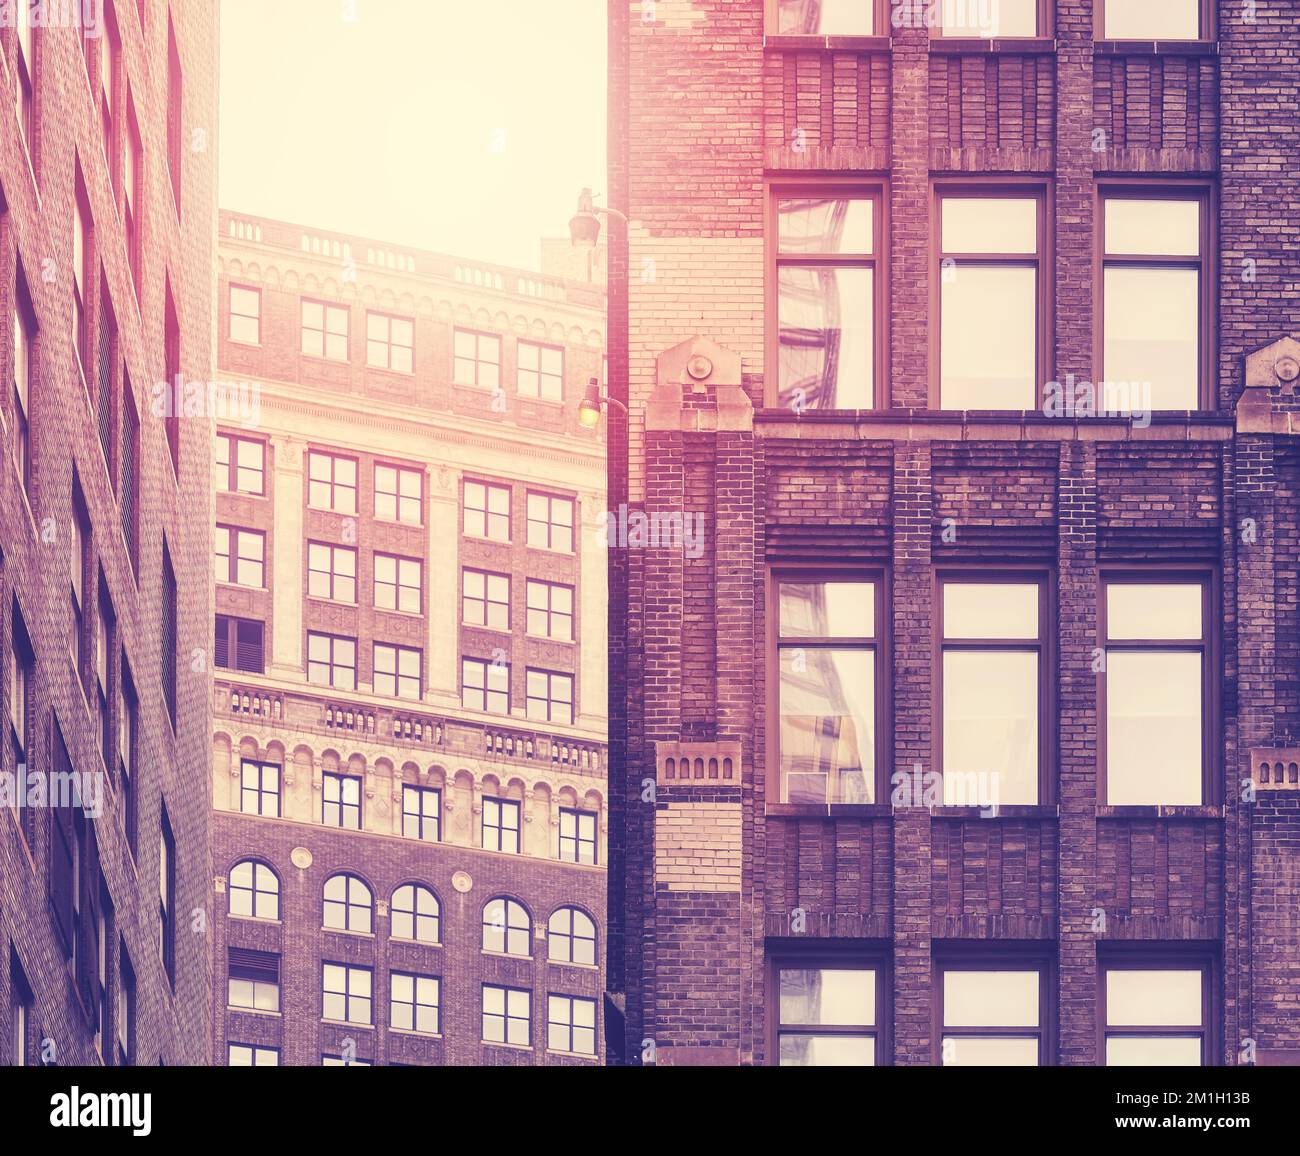 Façades de bâtiments anciens de New York, couleurs appliquées, États-Unis. Banque D'Images